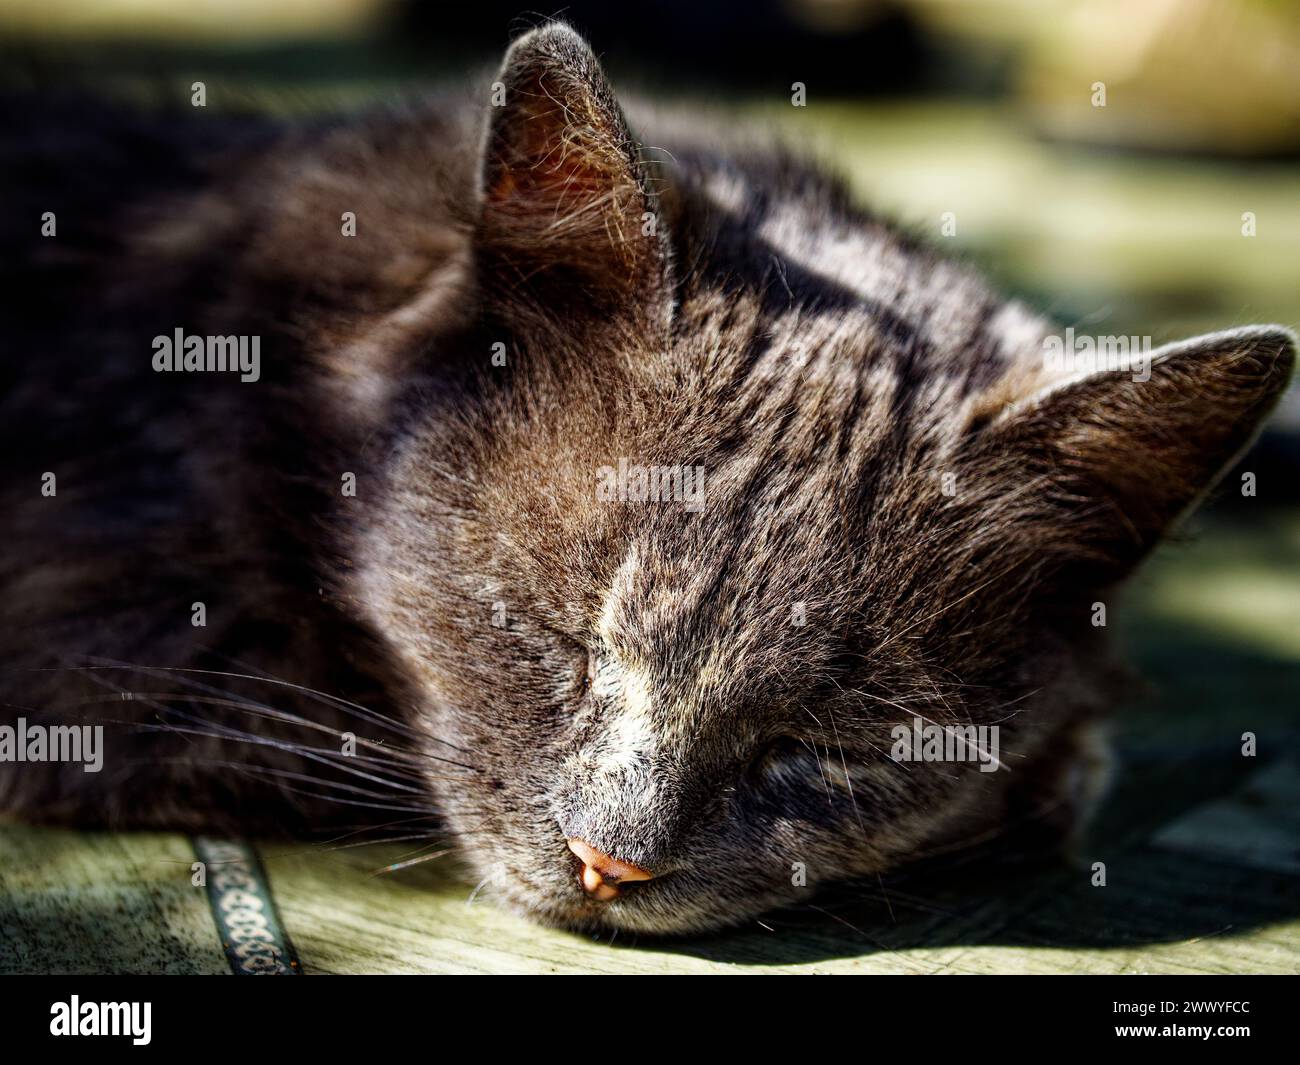 Nahaufnahme einer liegenden Katze auf einer Holzoberfläche, in natürlichem Licht getaucht, mit detailliertem grauem und braunem Fell. Stockfoto